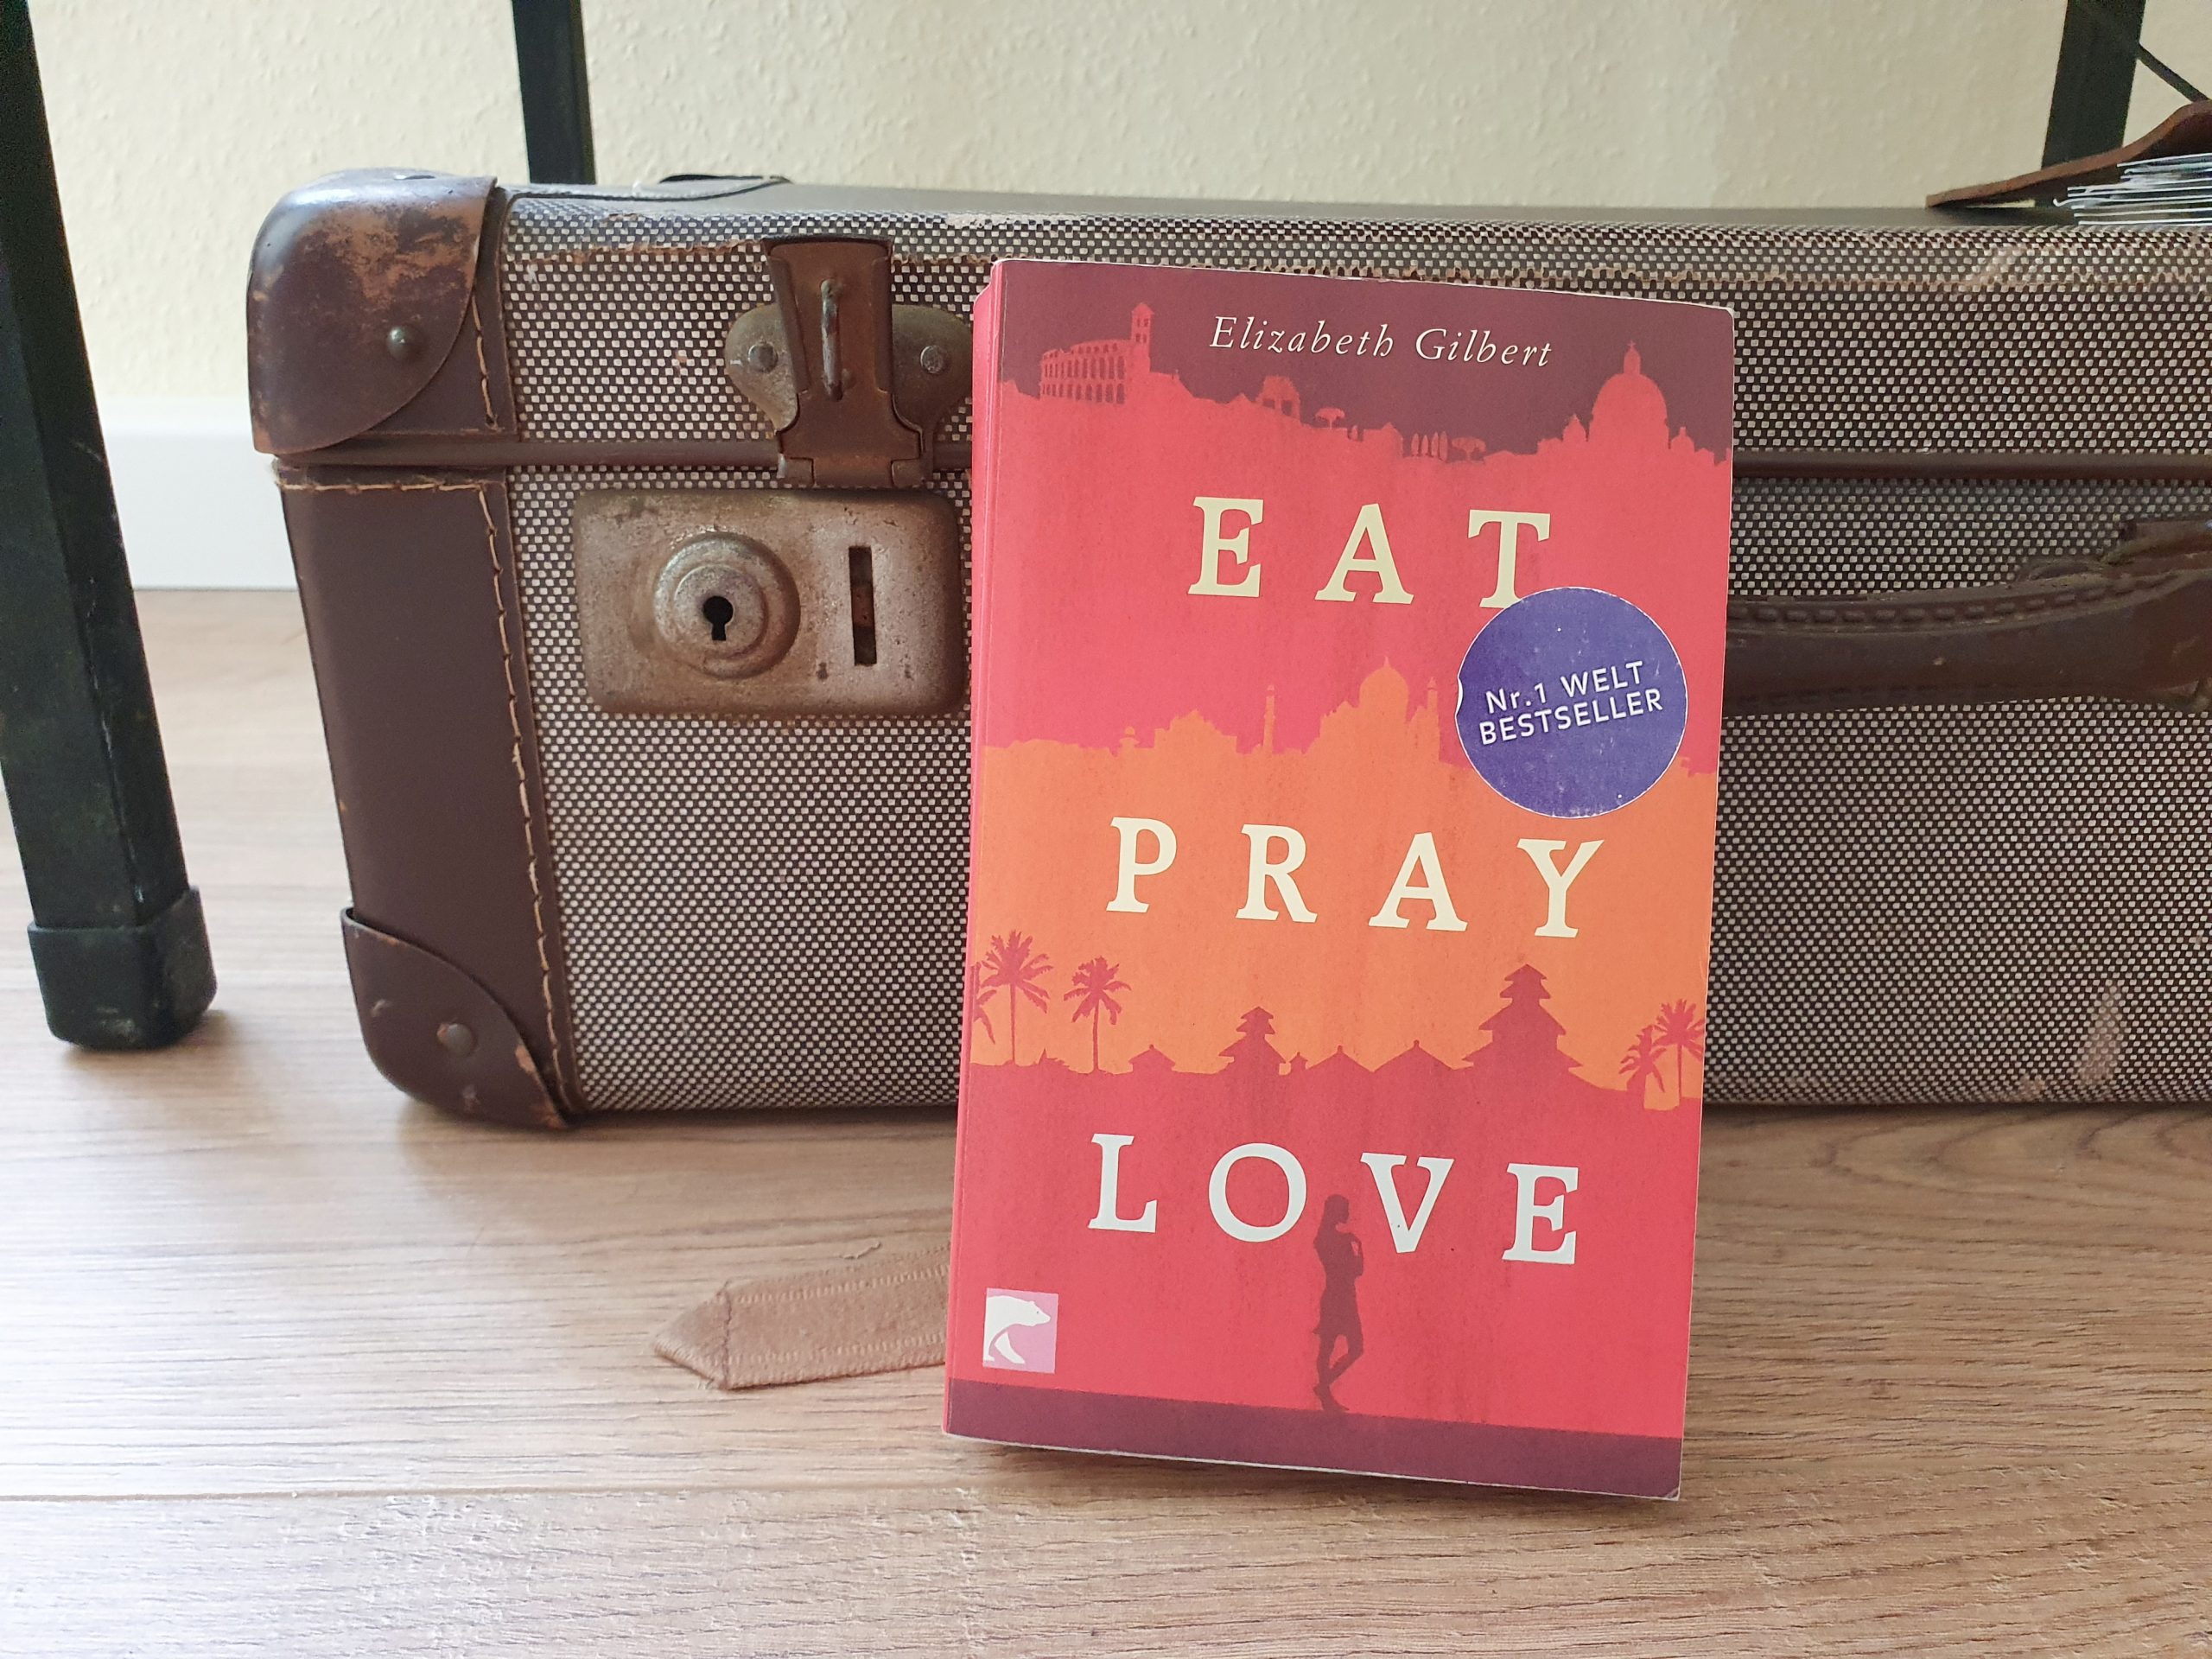 Eat pray love